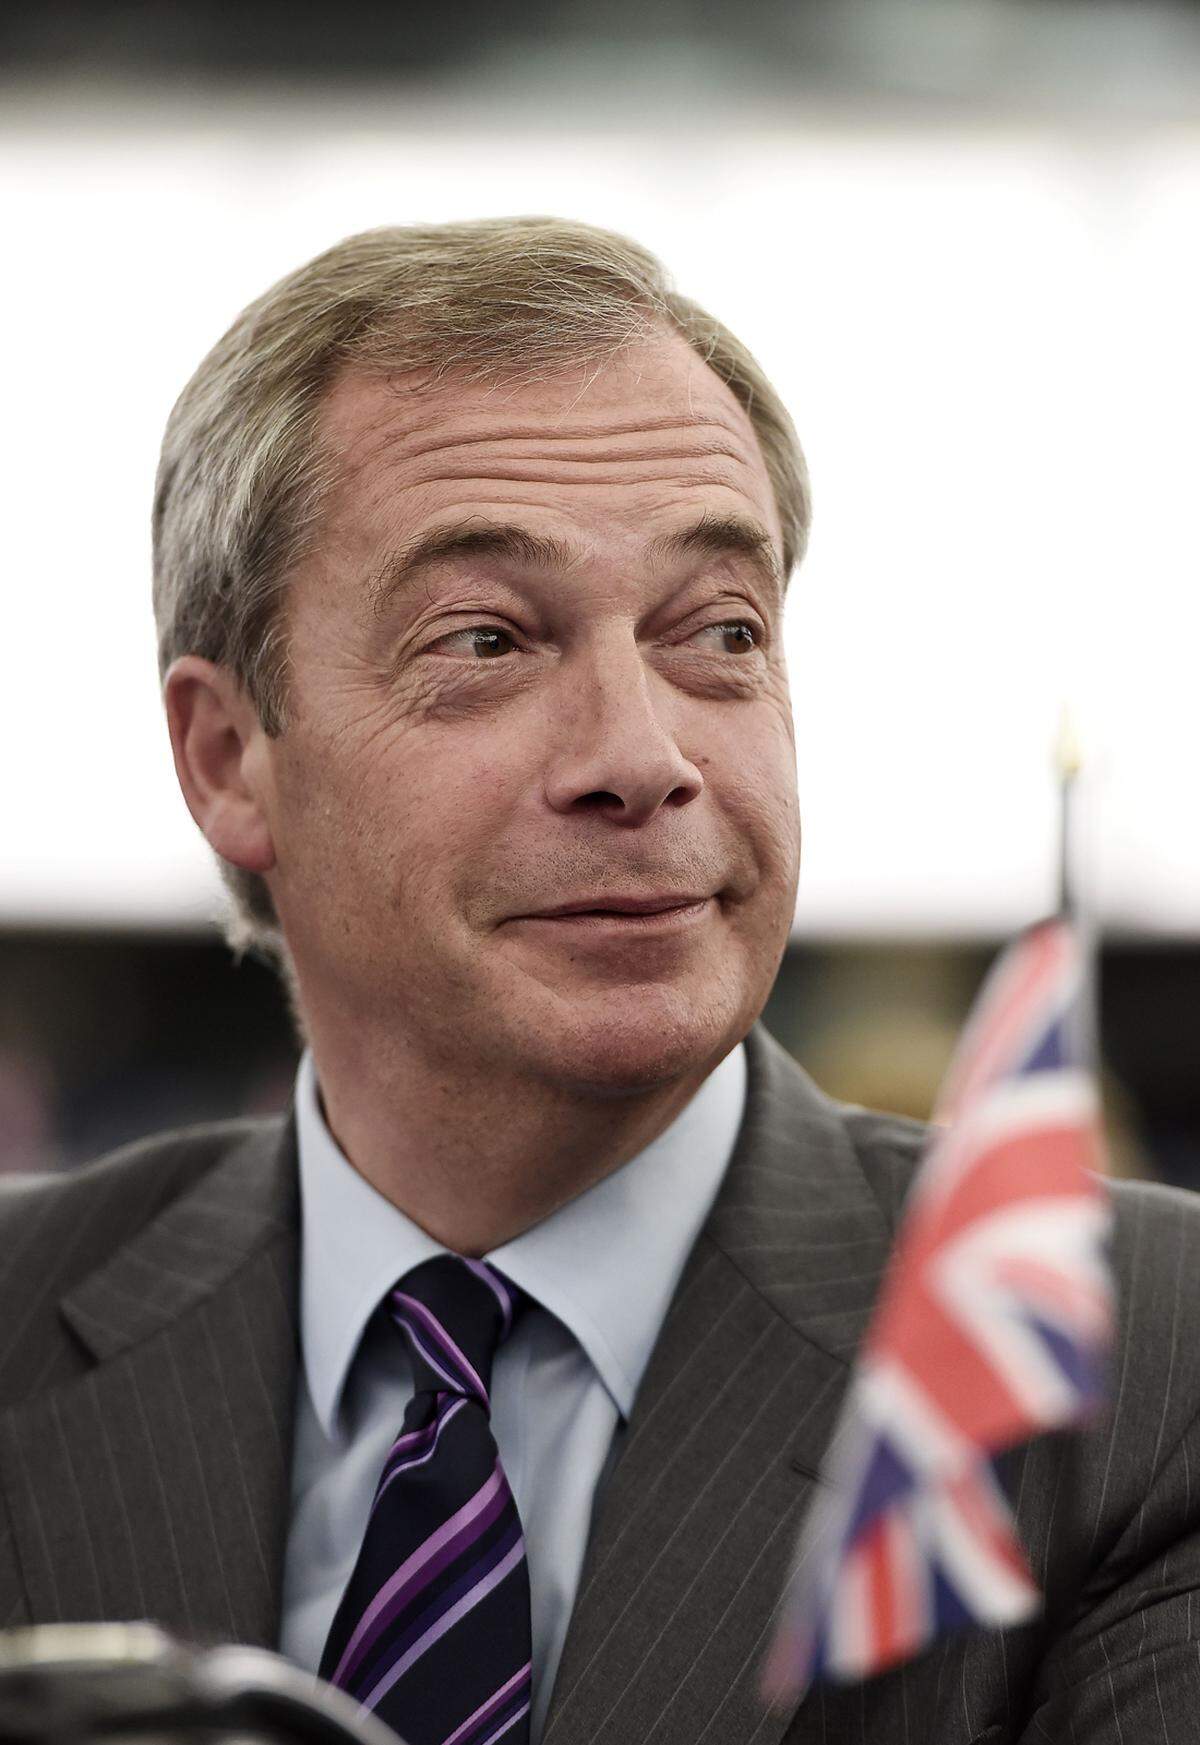 Zweites Brexit-Referendum. 52 Prozent der Briten stimmen für den EU-Austritt, nachdem sich prominente Mitglieder der Tories – darunter Boris Johnson und Michael Gove – auf die Seite der Austrittsbefürworter gestellt haben (im Bild: UKIP-Chef Nigel Farage). Am Tag nach dem Referendum erklärt Cameron seinen Rücktritt.